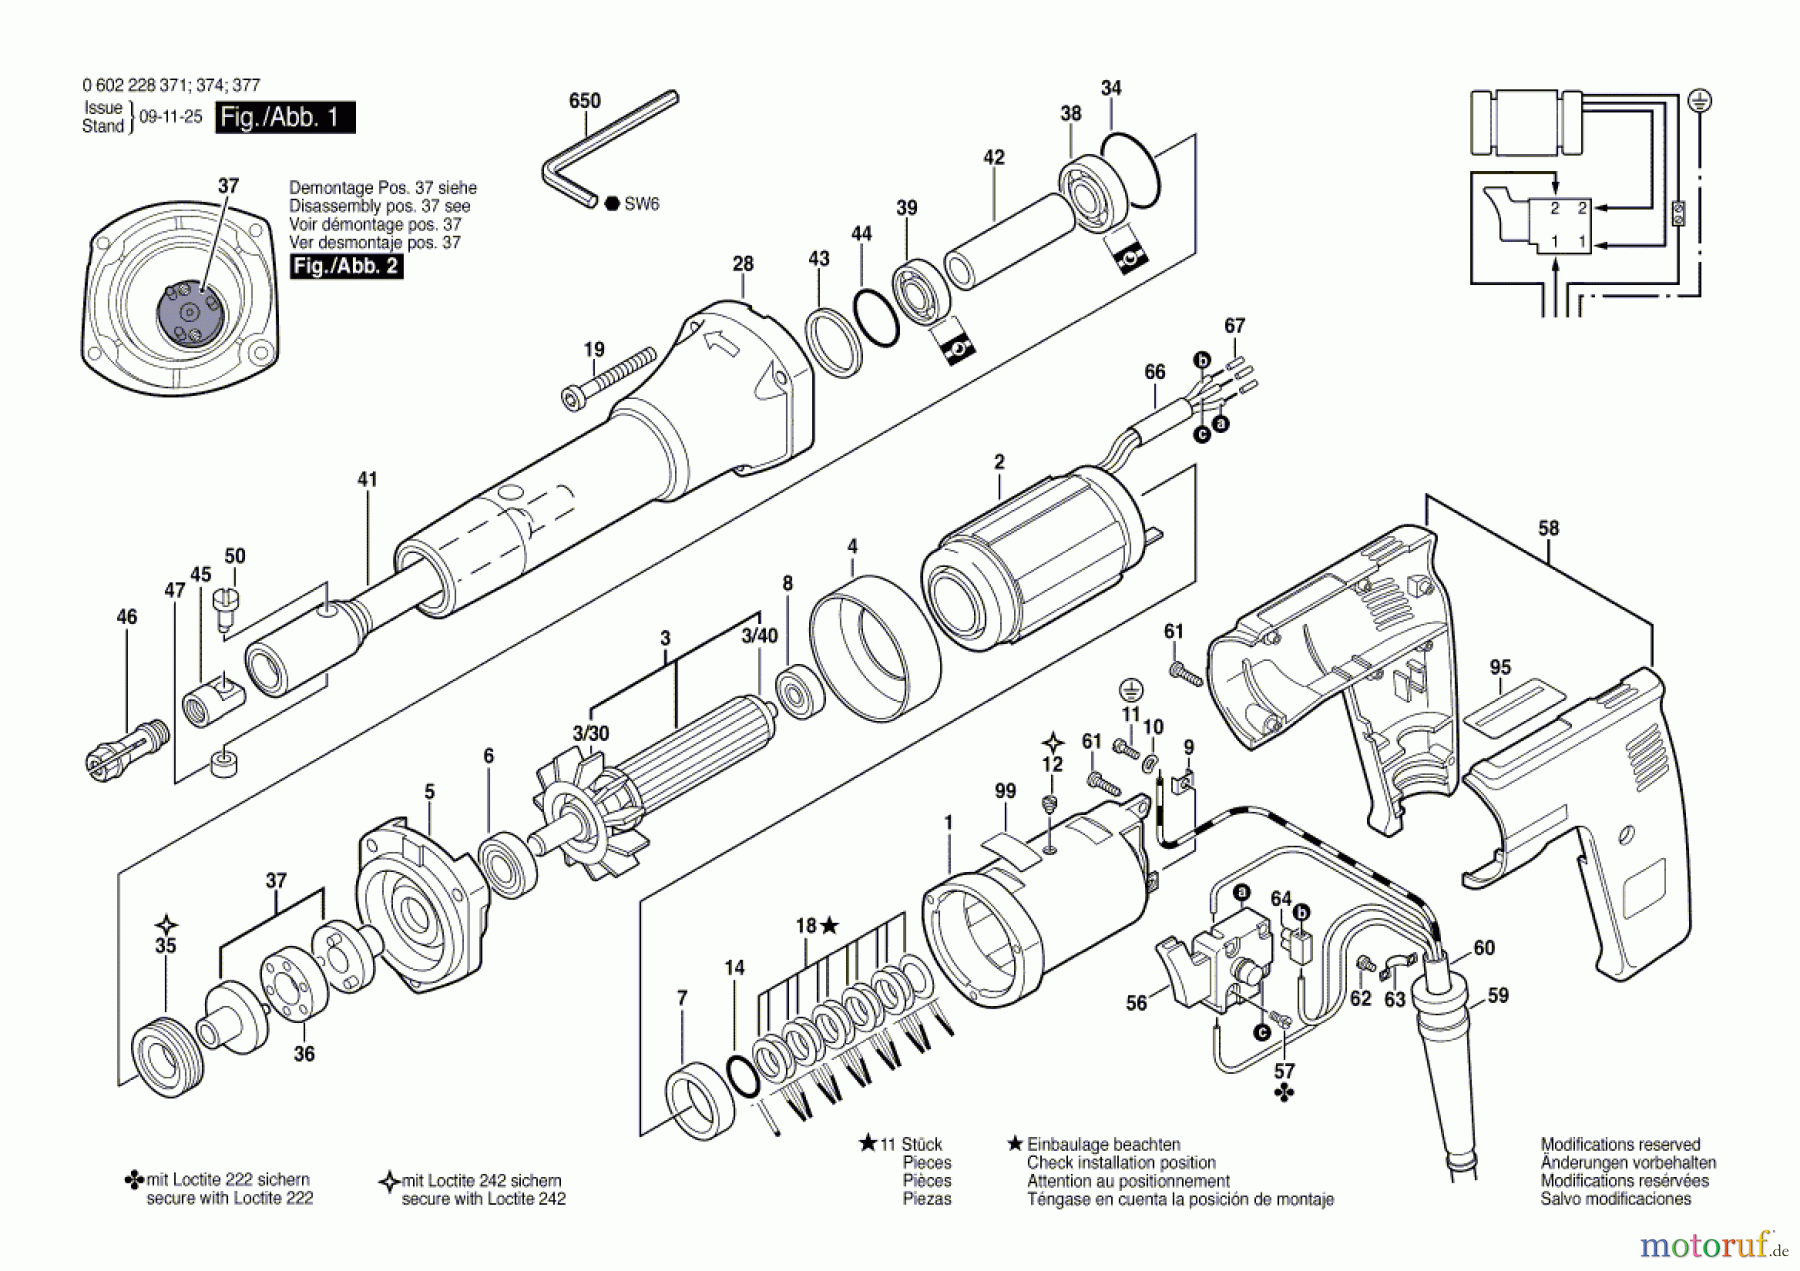  Bosch Werkzeug Geradschleifer HGS 55/50 Seite 1